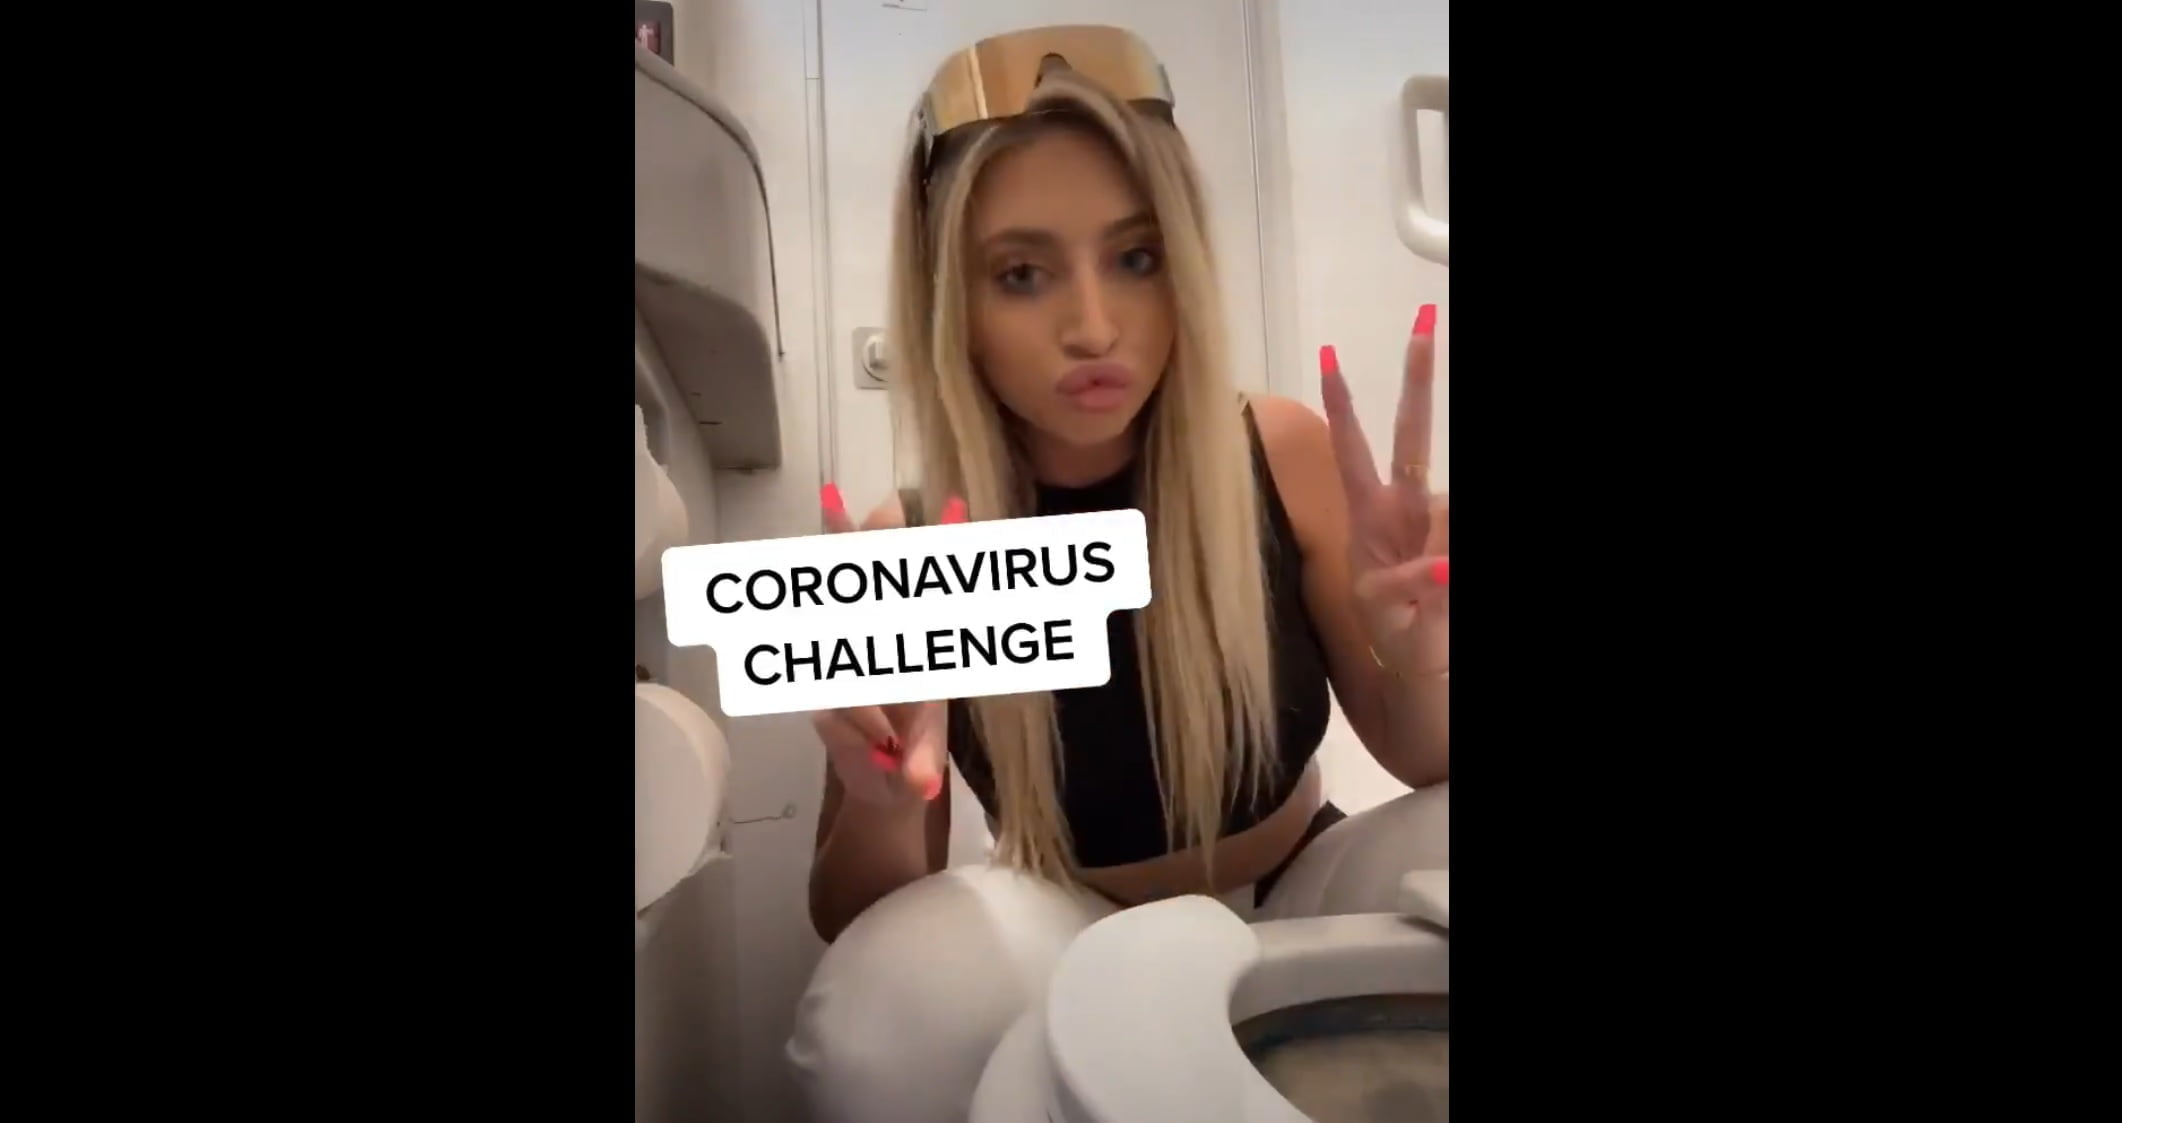 Coronavirus challenge